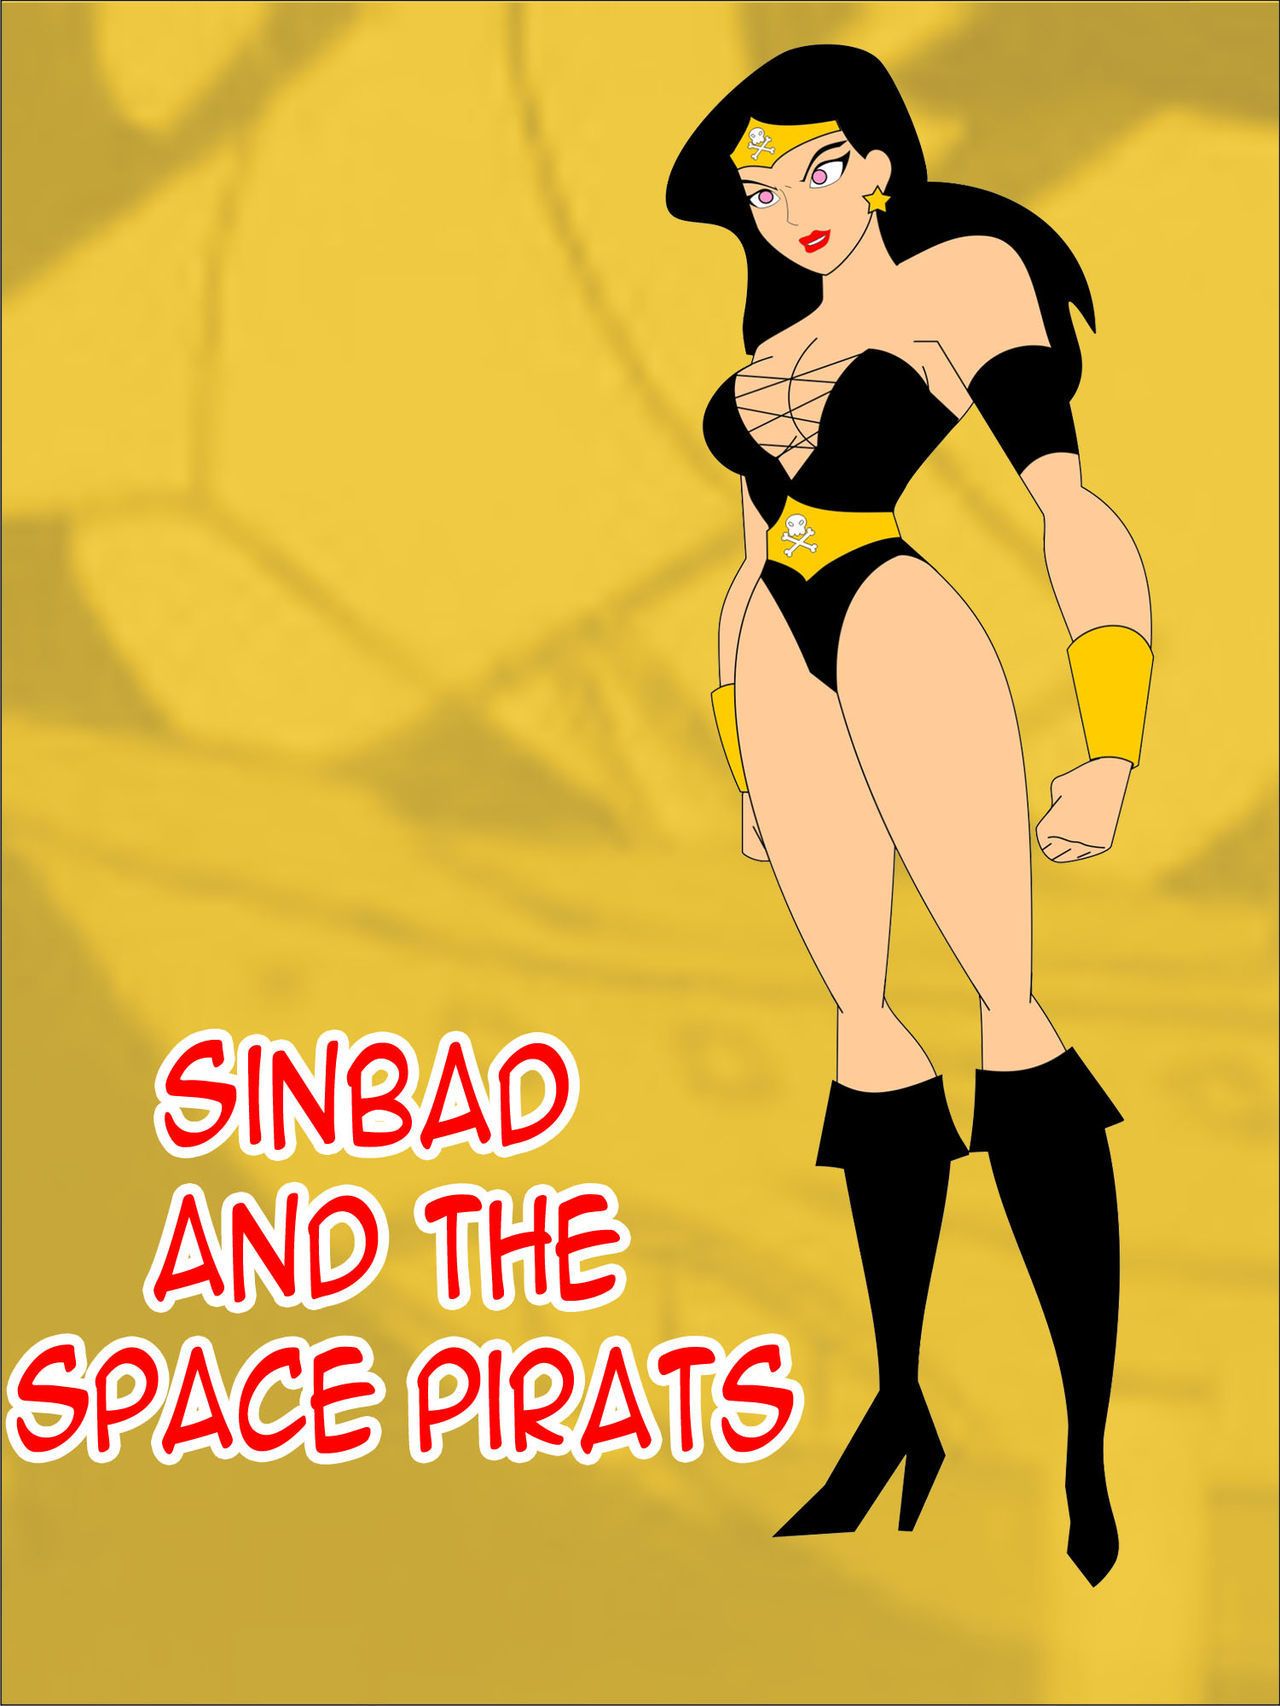 jimryu Sinbad i w przestrzeń piraci (justice league)